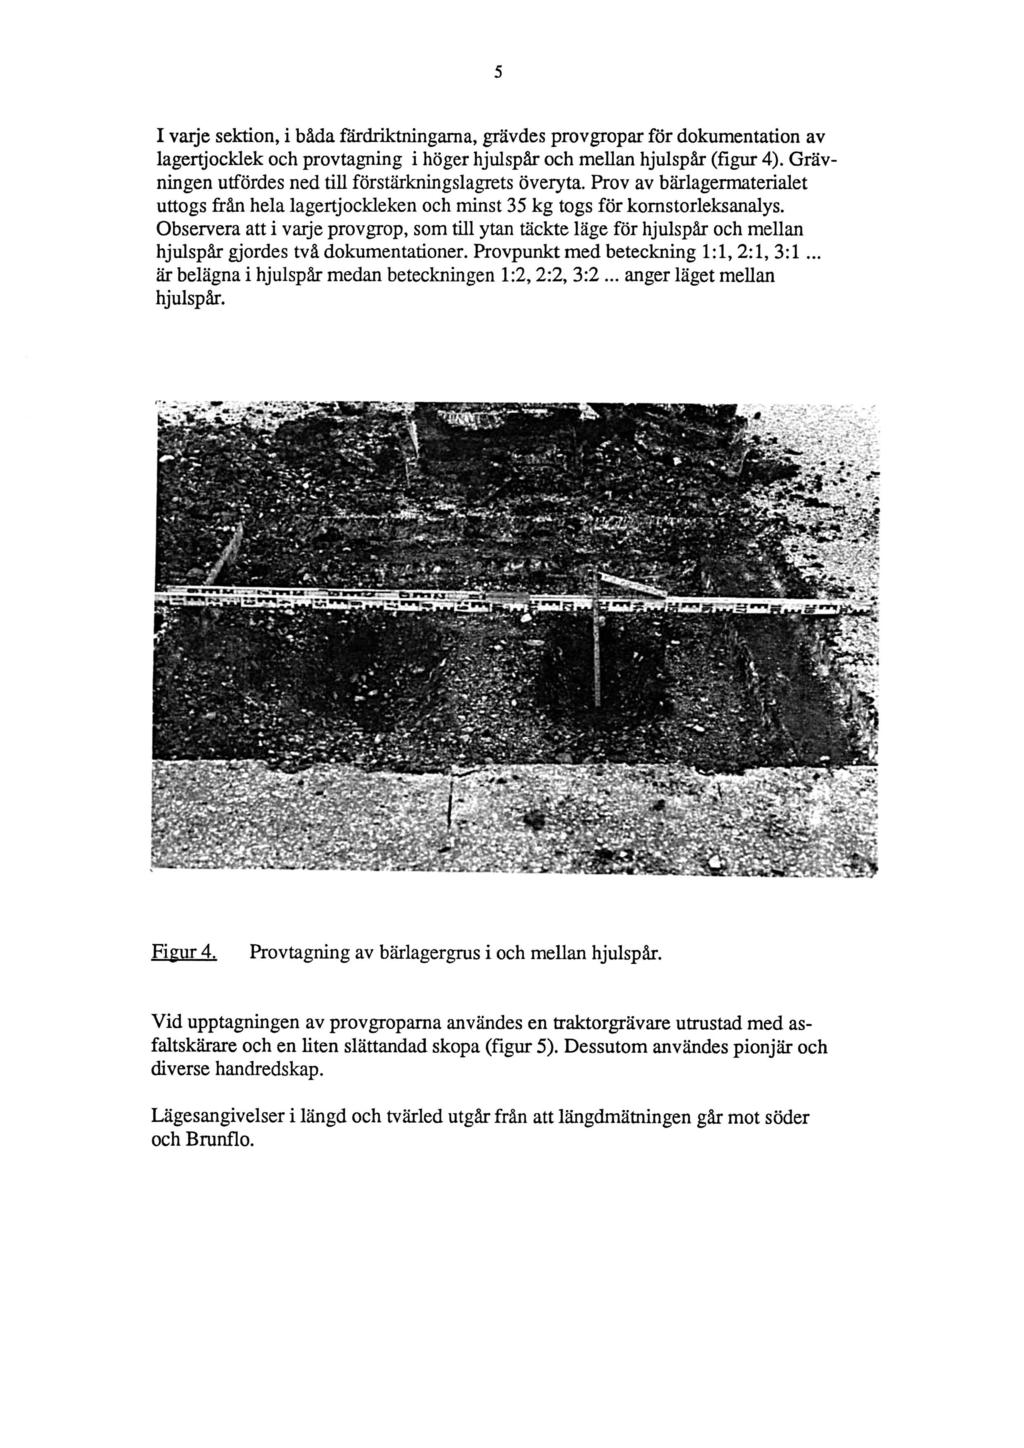 I vaije sektion, i båda färdriktningarna, grävdes provgropar för dokumentation av lagertjocklek och provtagning i höger hjulspår och mellan hjulspår (figur 4).